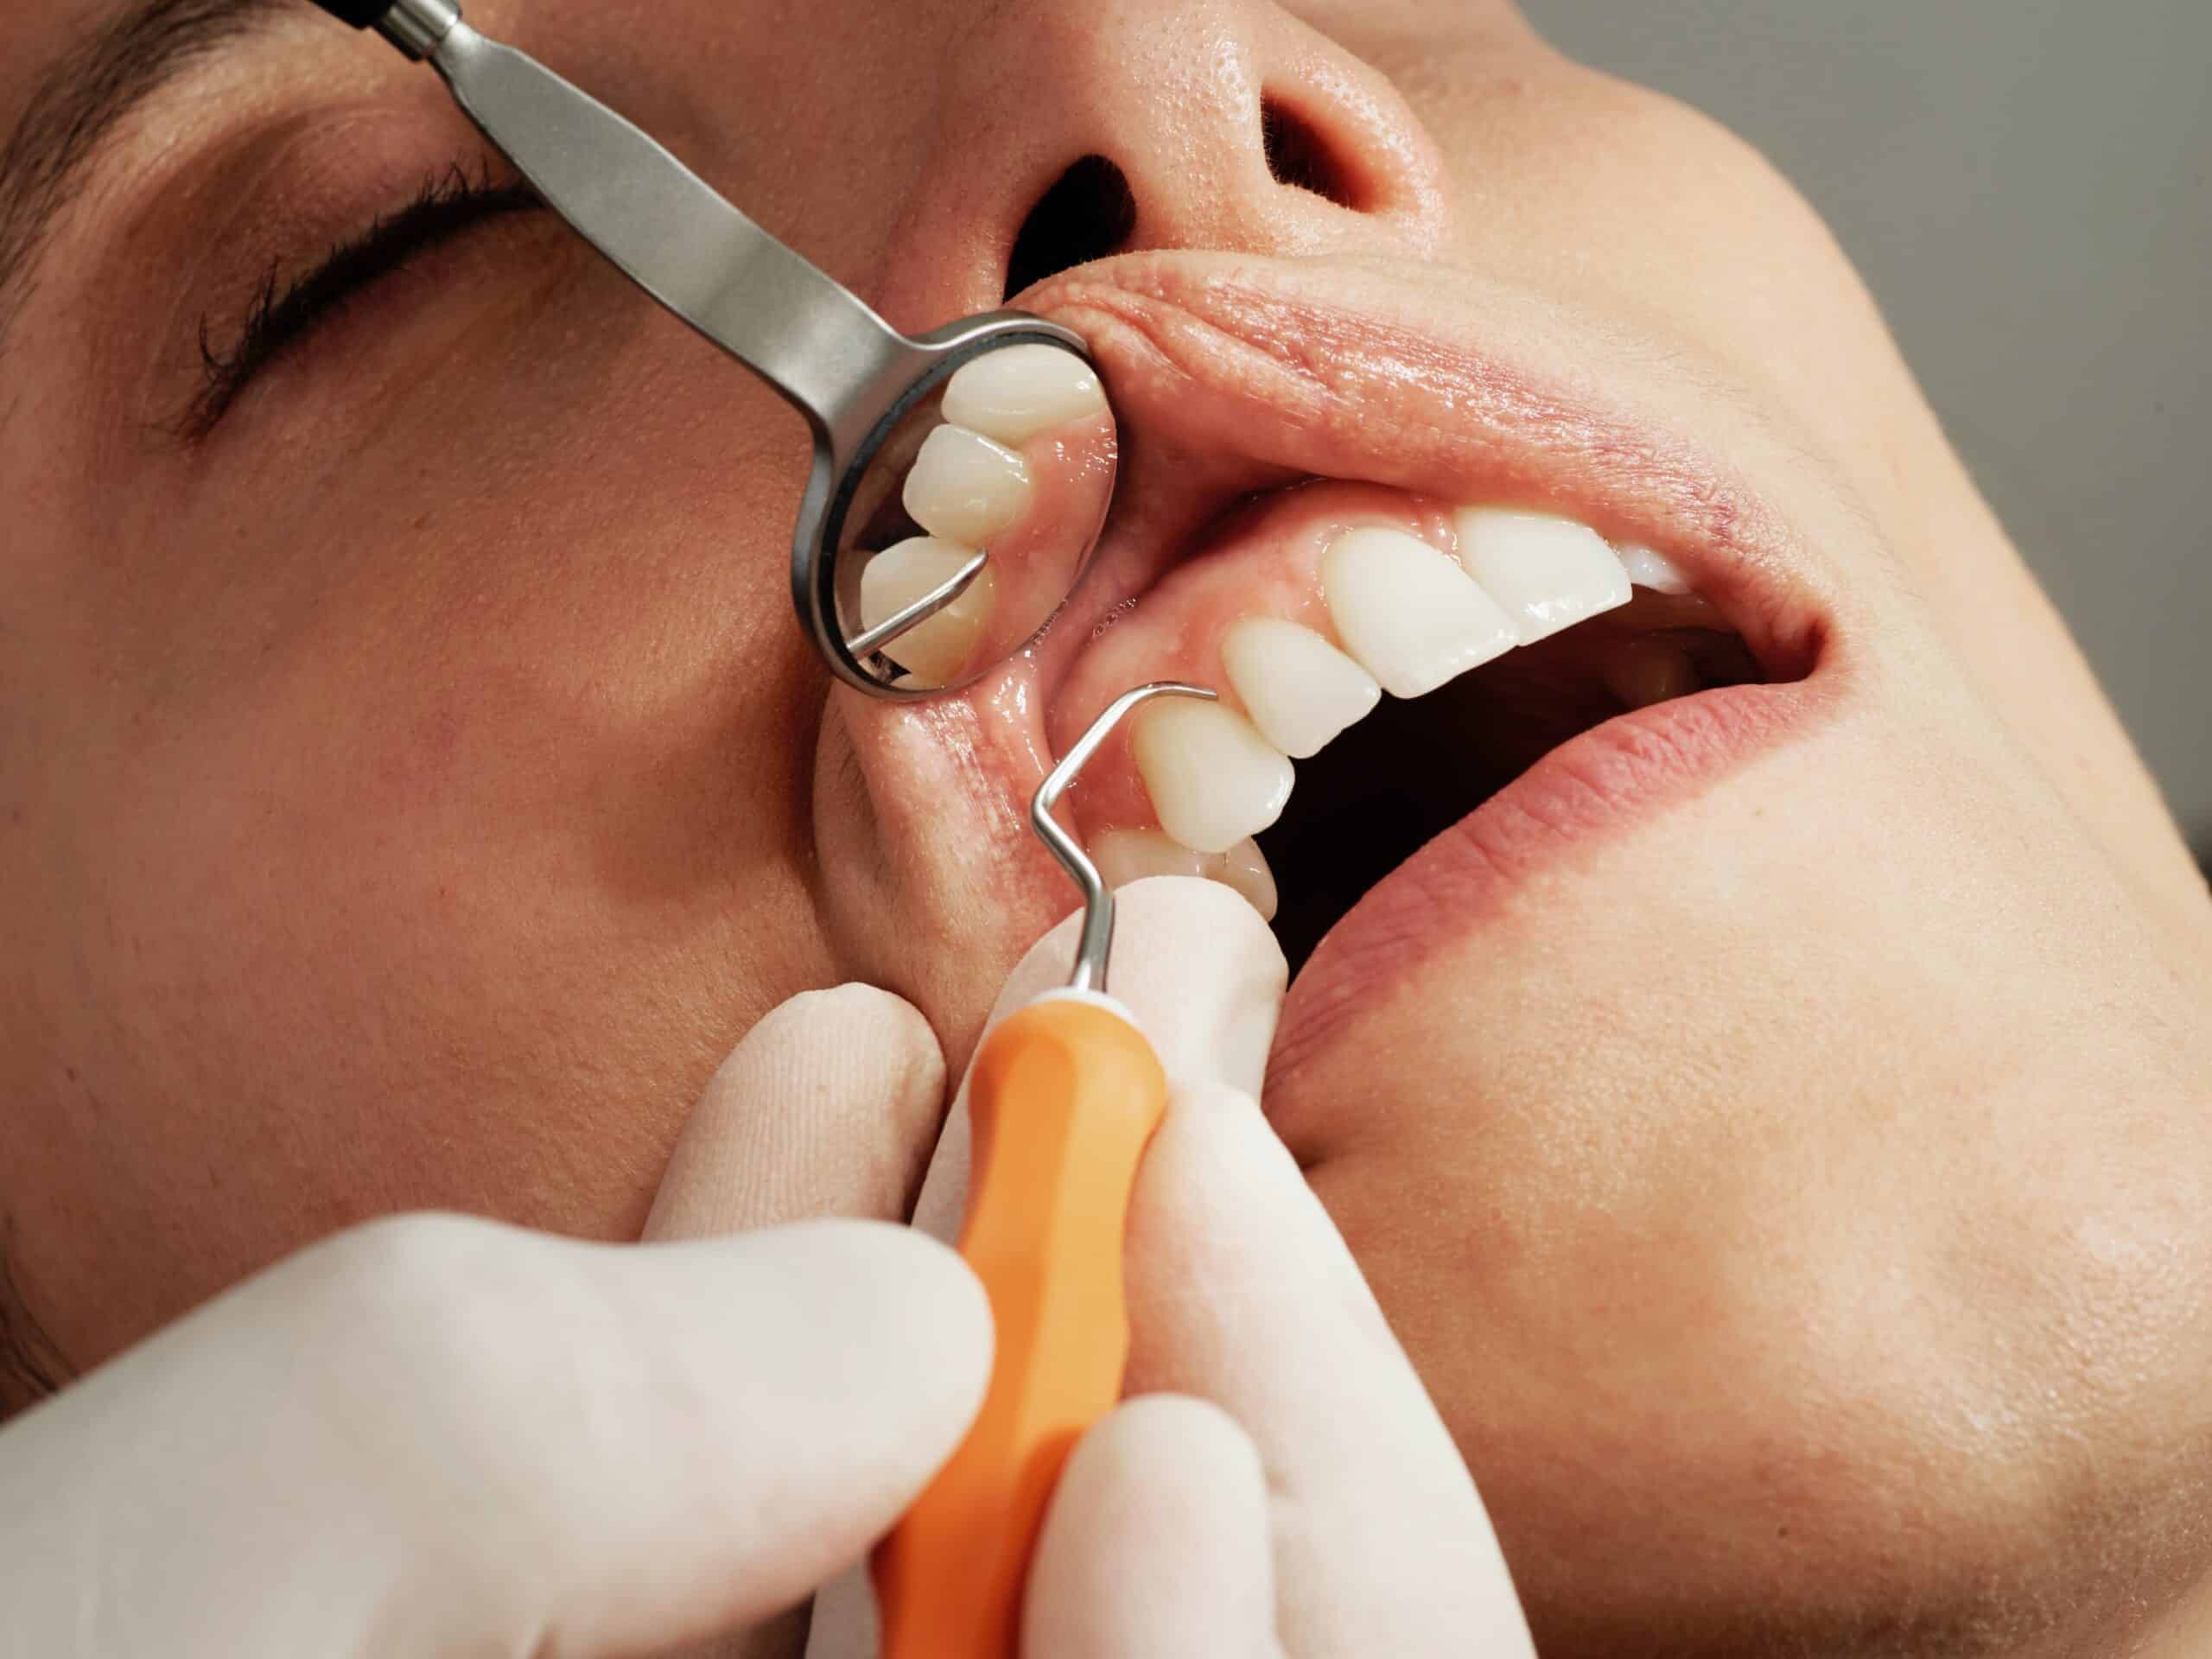 Olathe Sedation Dentistry